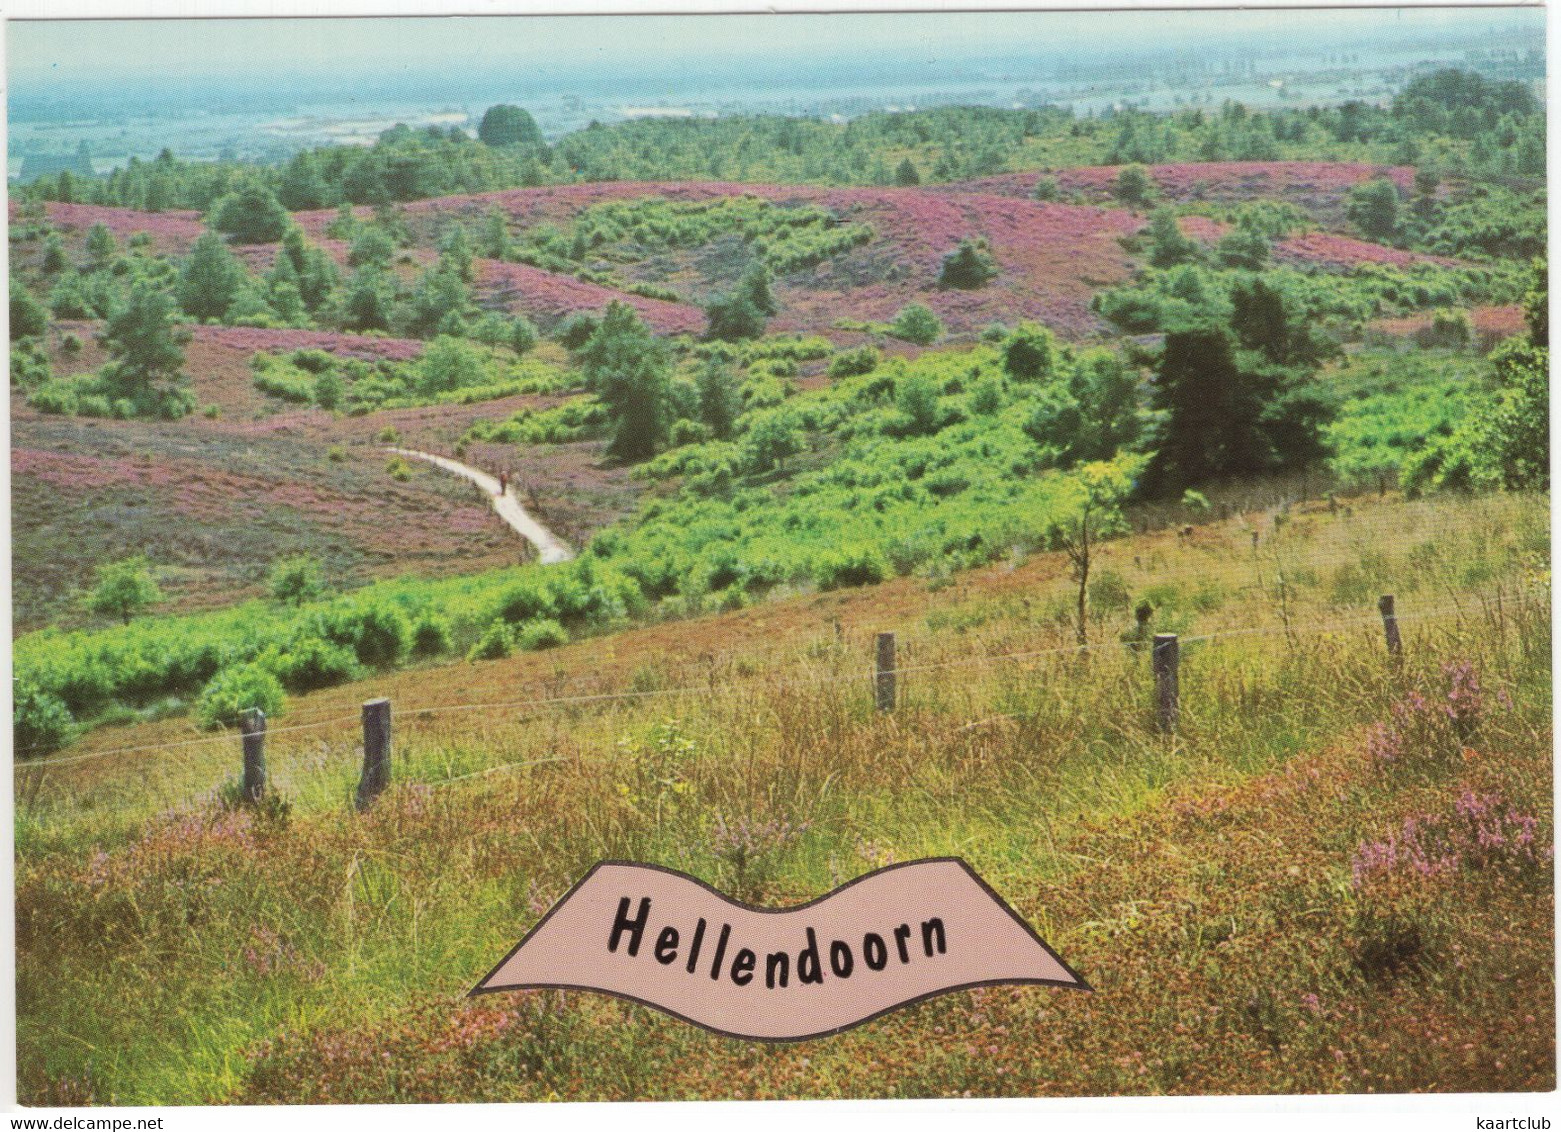 Hellendoorn - (Ov.,Nederland / Holland) - No. L 3590 - Heuvel, Hei, Struiken - Hellendoorn